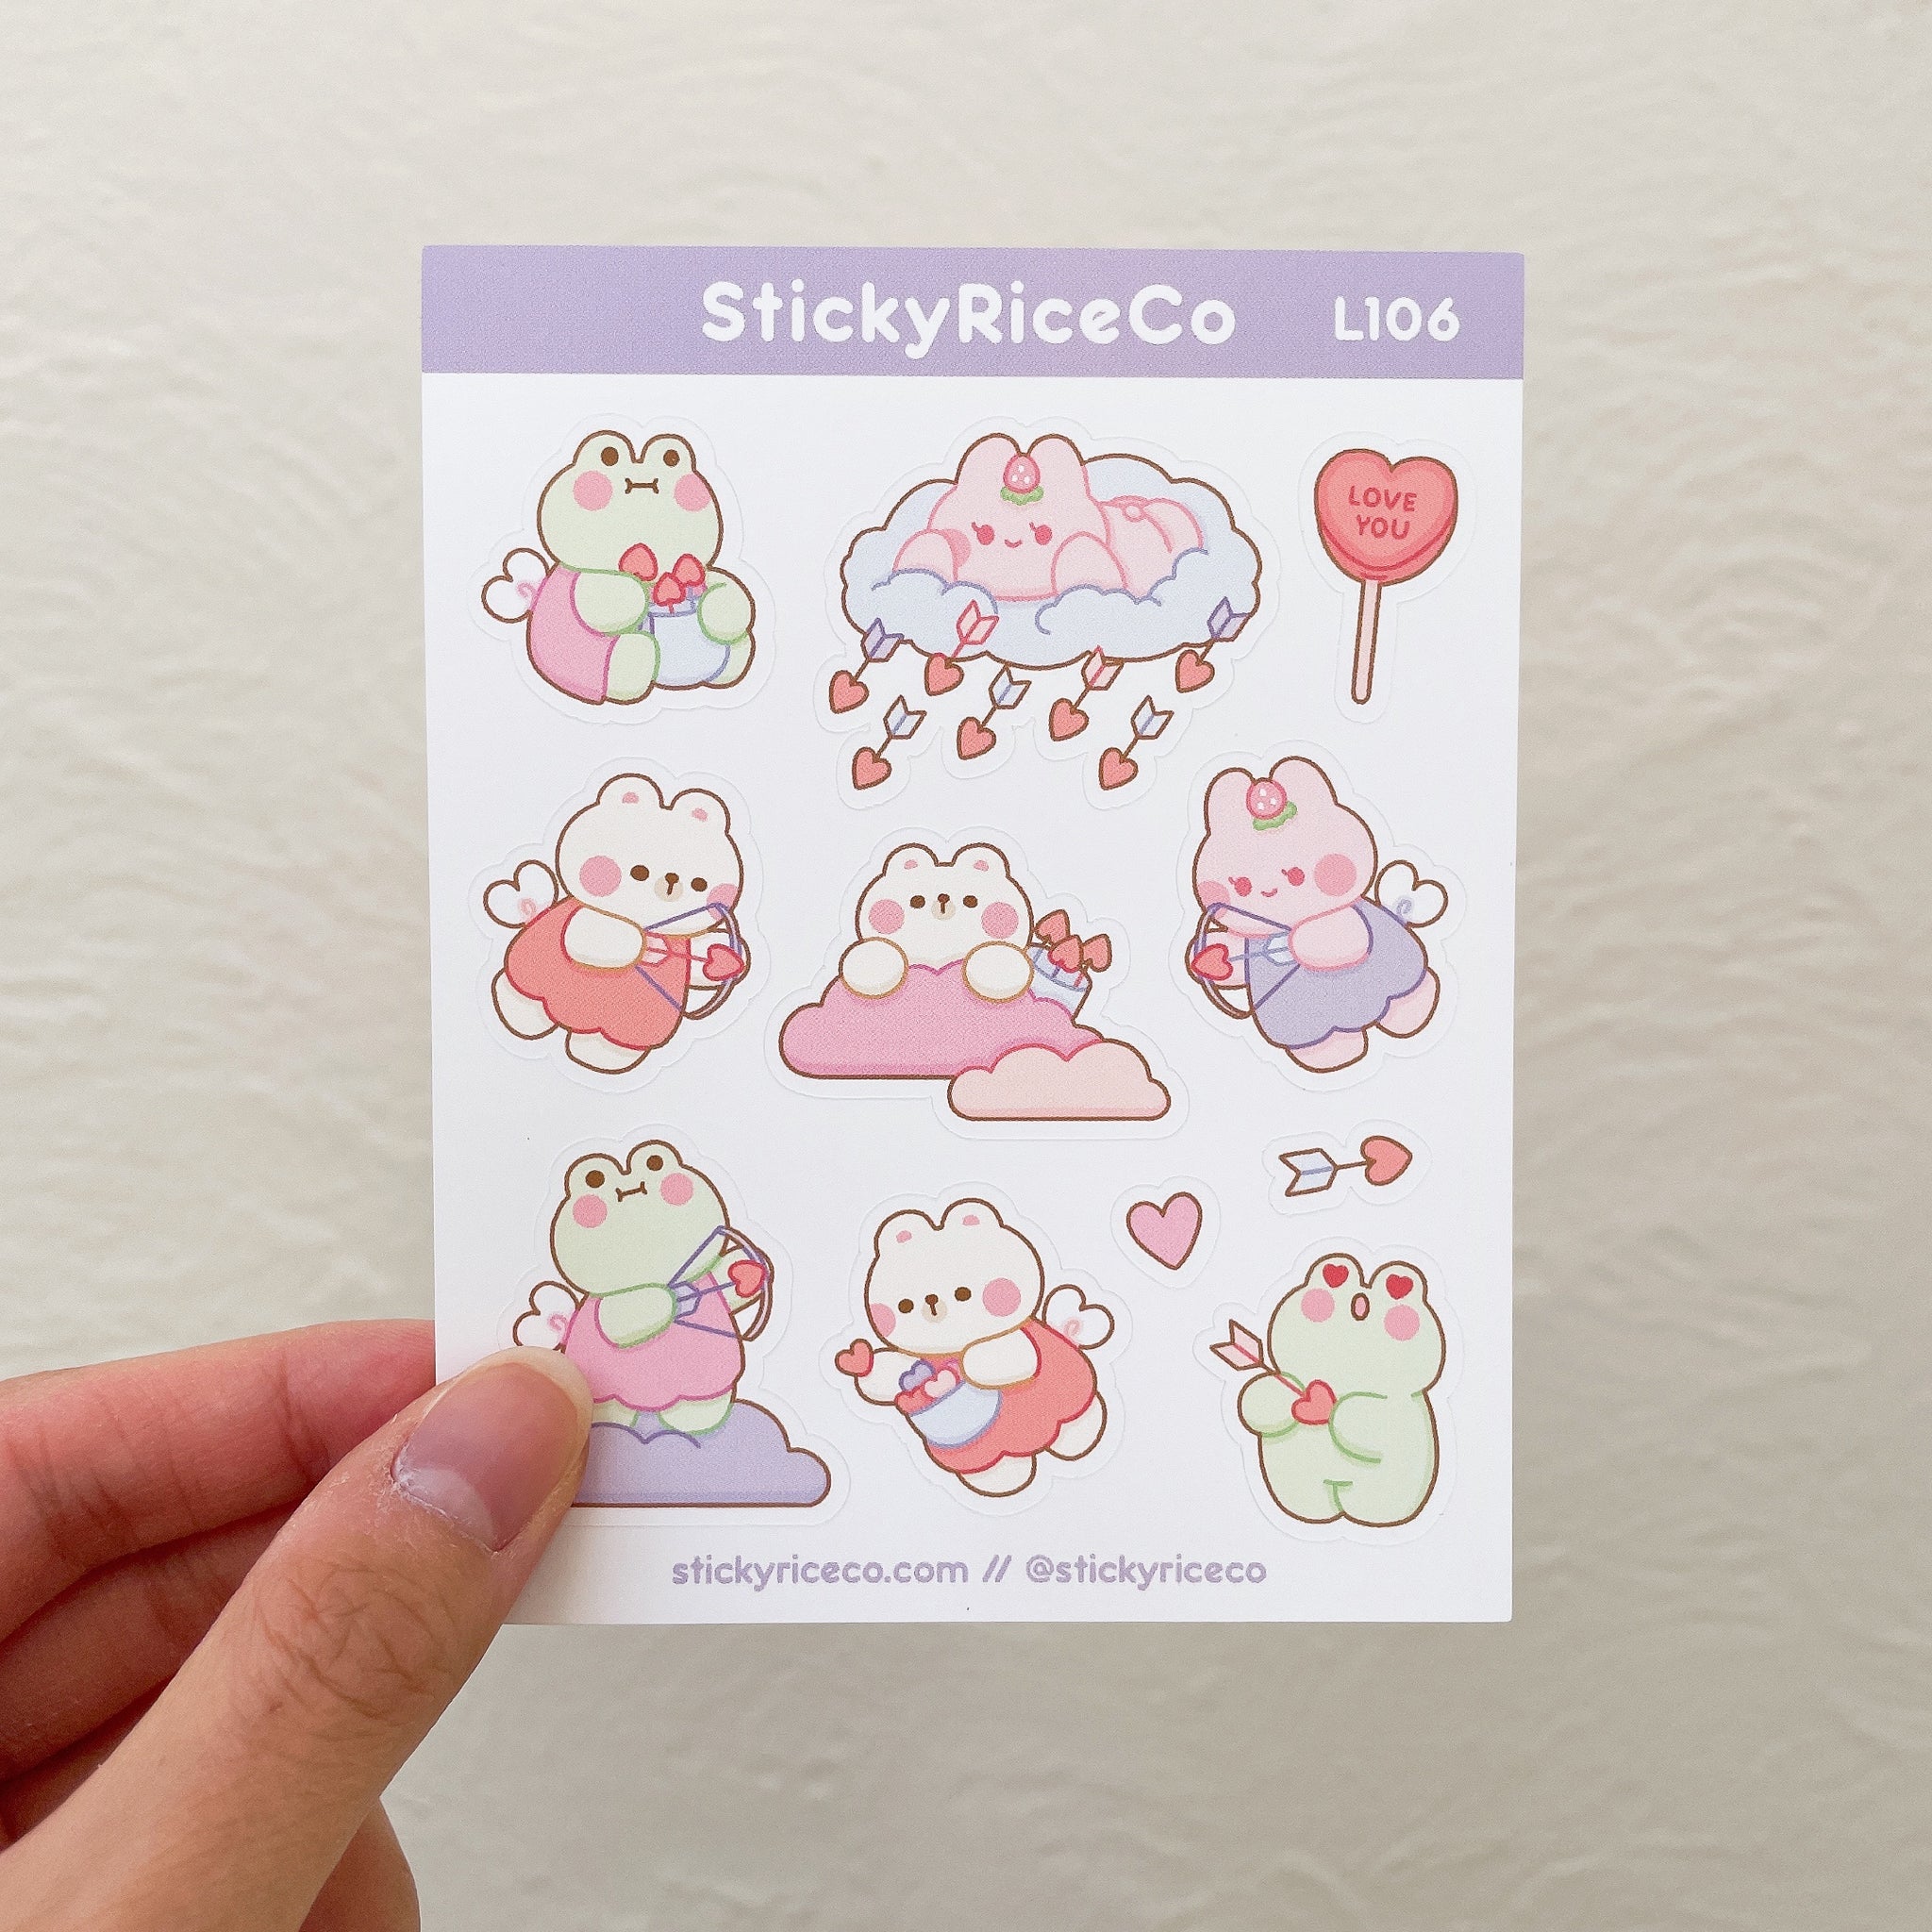 Cupid StickyRiceCo Friends Valentine's Day Sticker Sheet